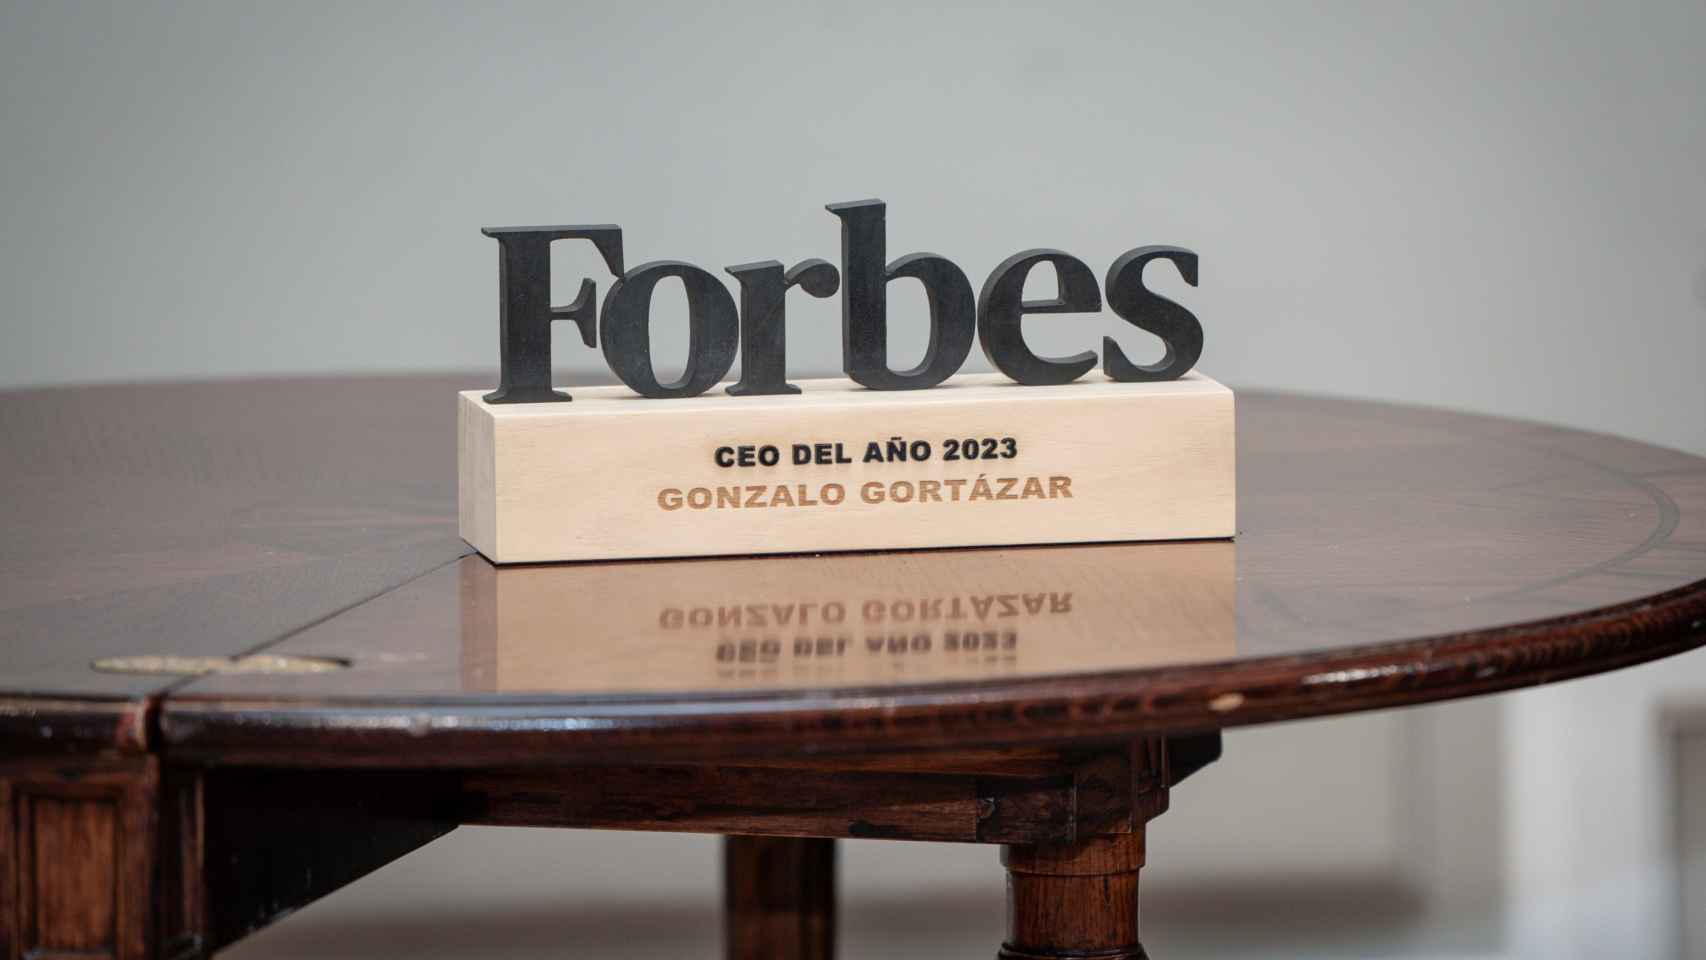 Premio Forbes al CEO del año 2023 para Gonzalo Gortázar.